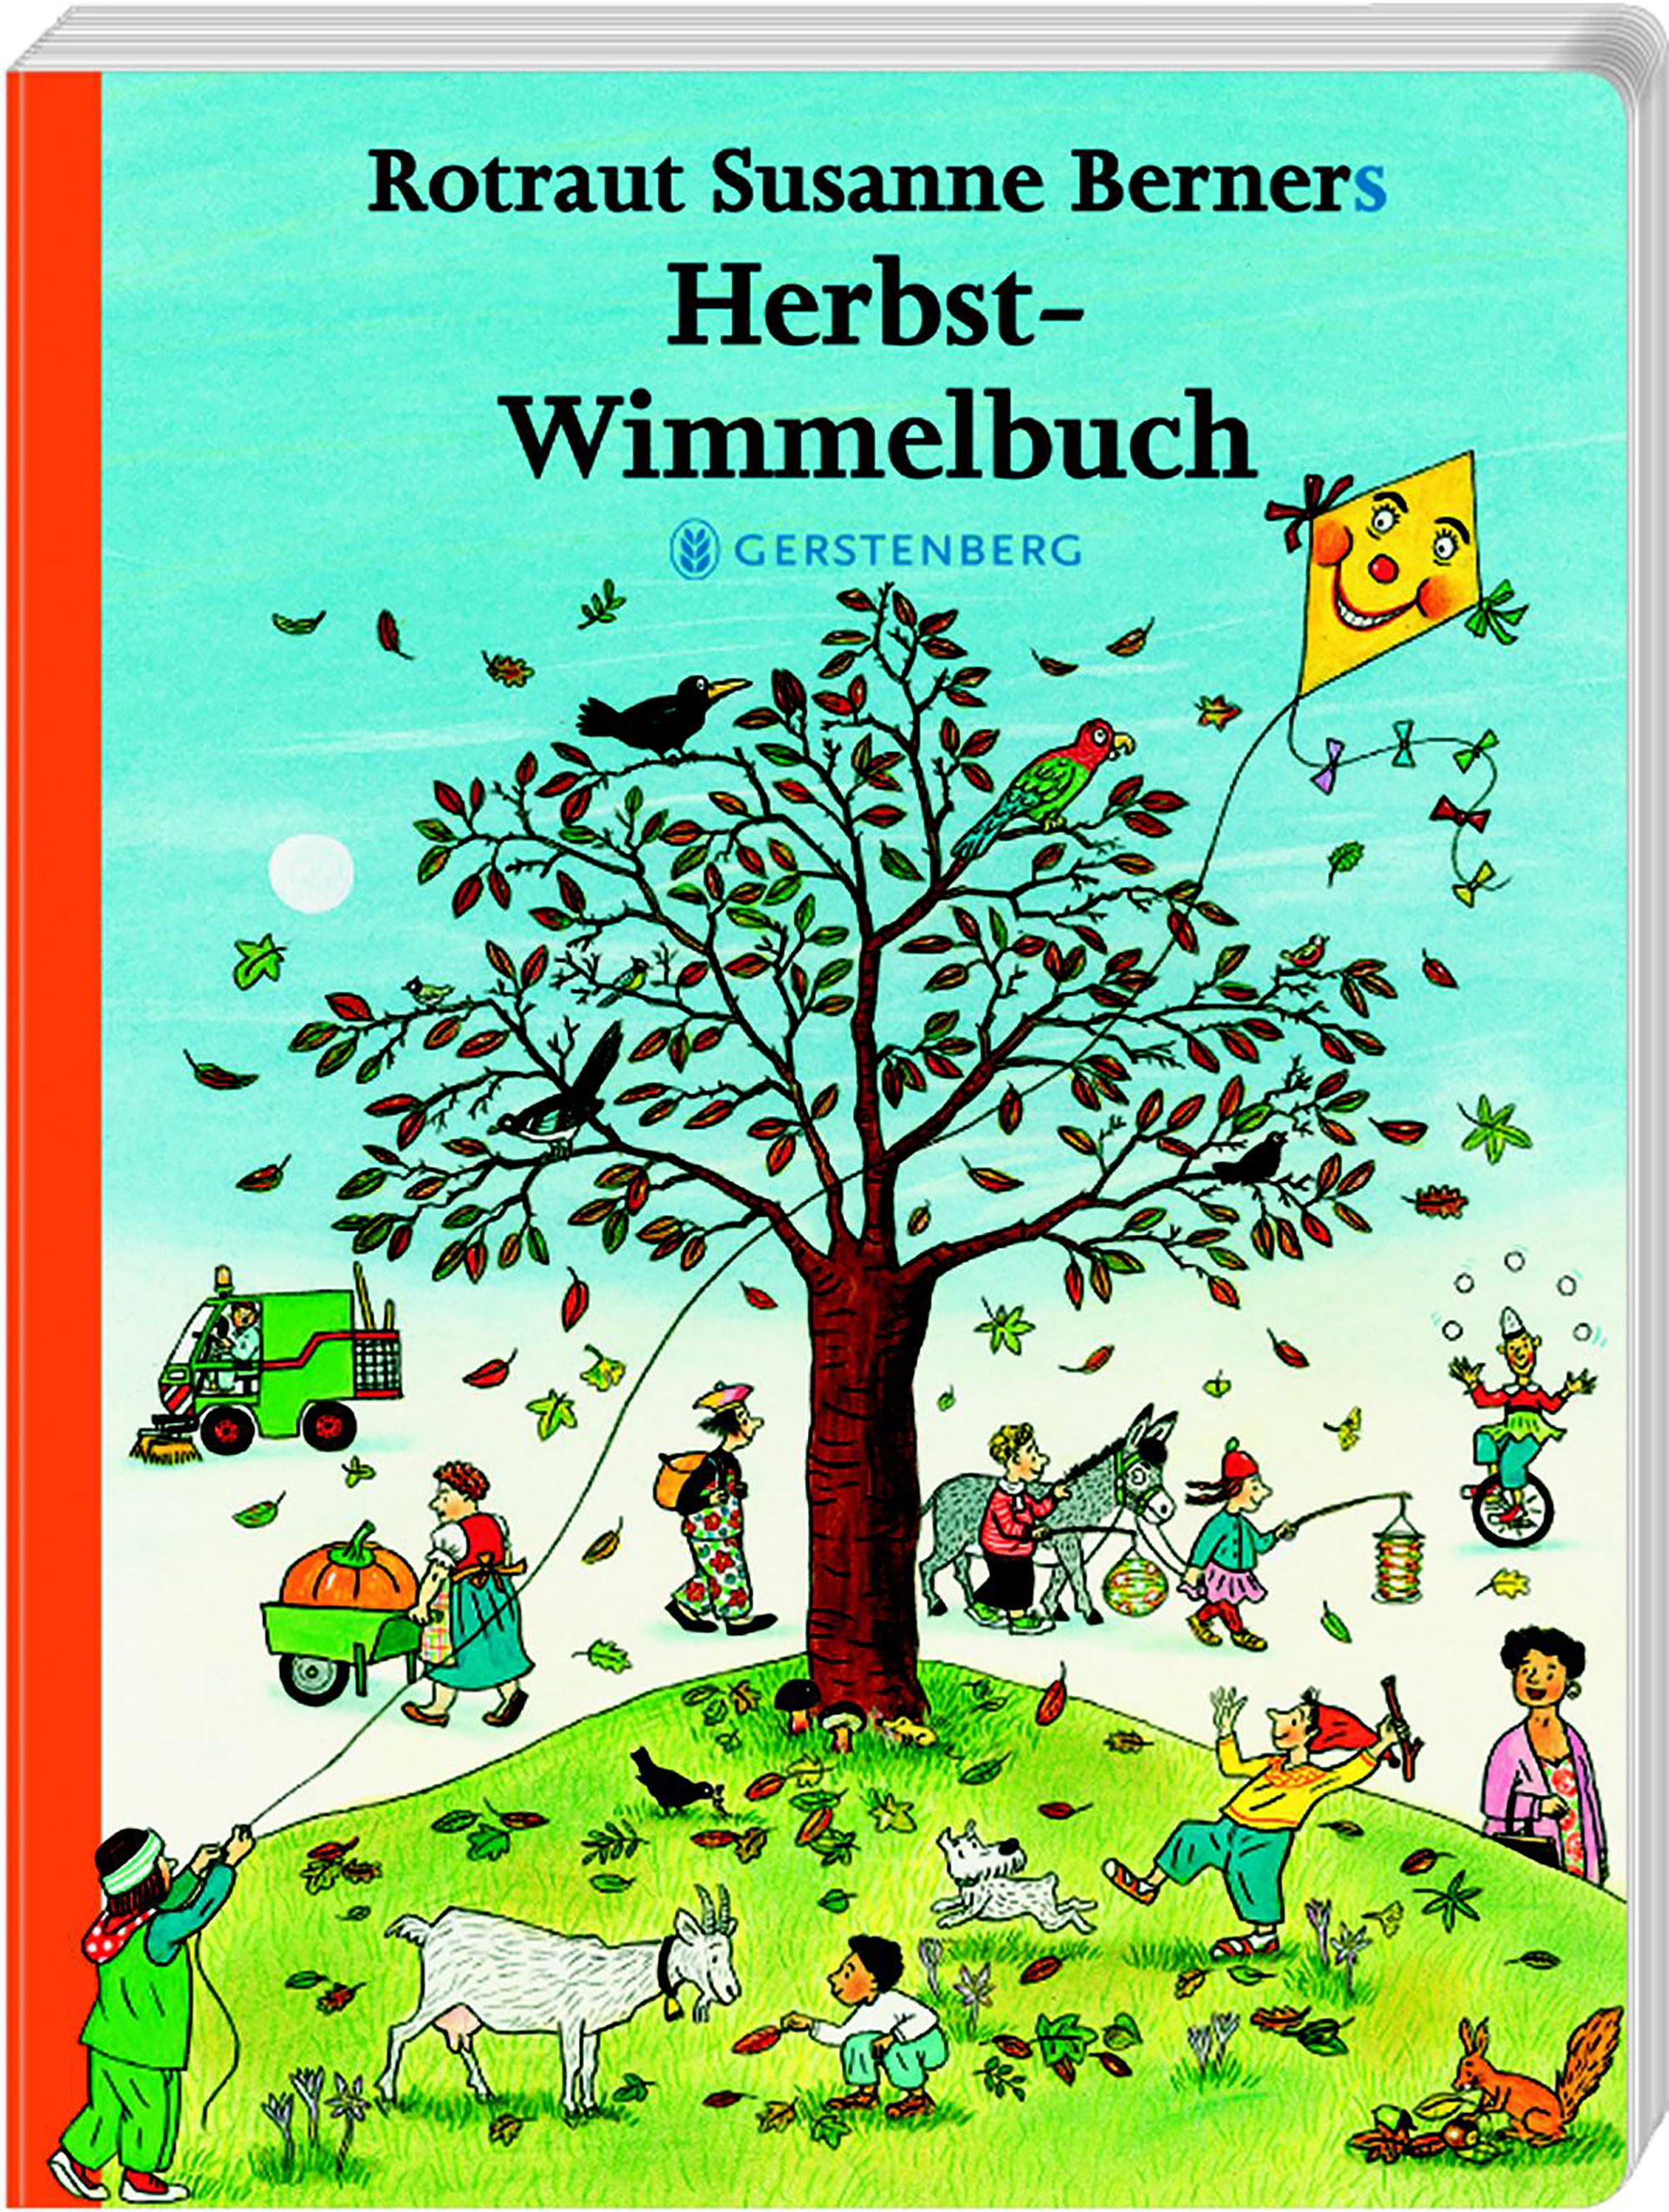 Herbst-Wimmelbuch Gerstenberg 2000580038002 1